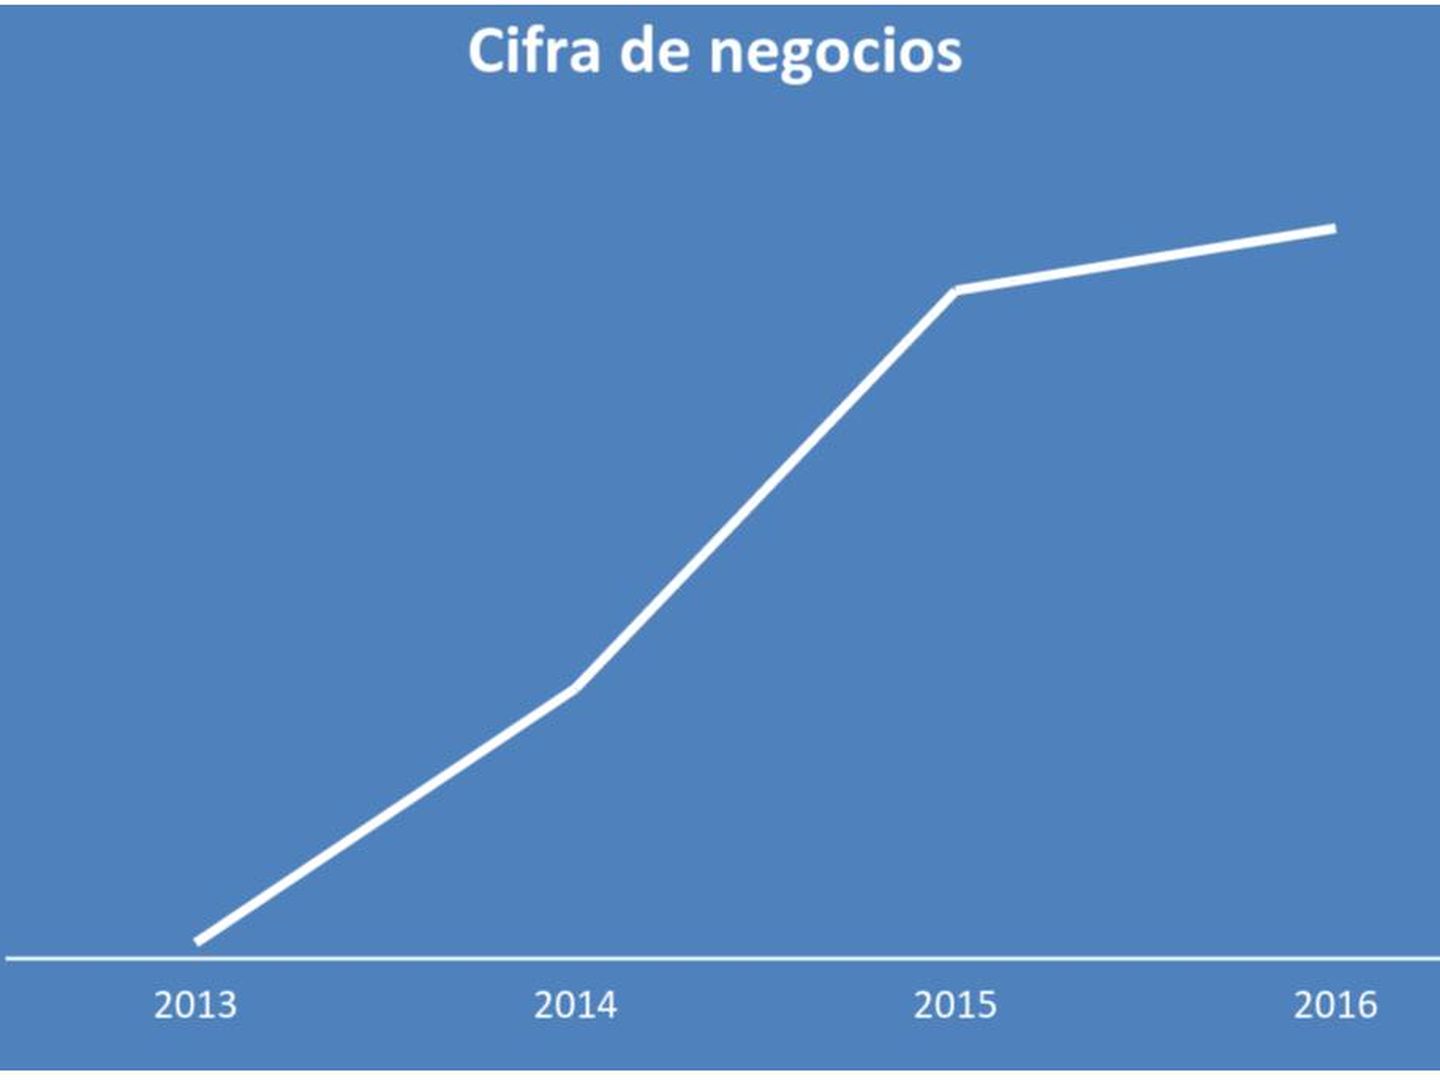 Evolución de la cifra de negocio de Alcanzia desde su nacimiento en 2013, en millones de euros.